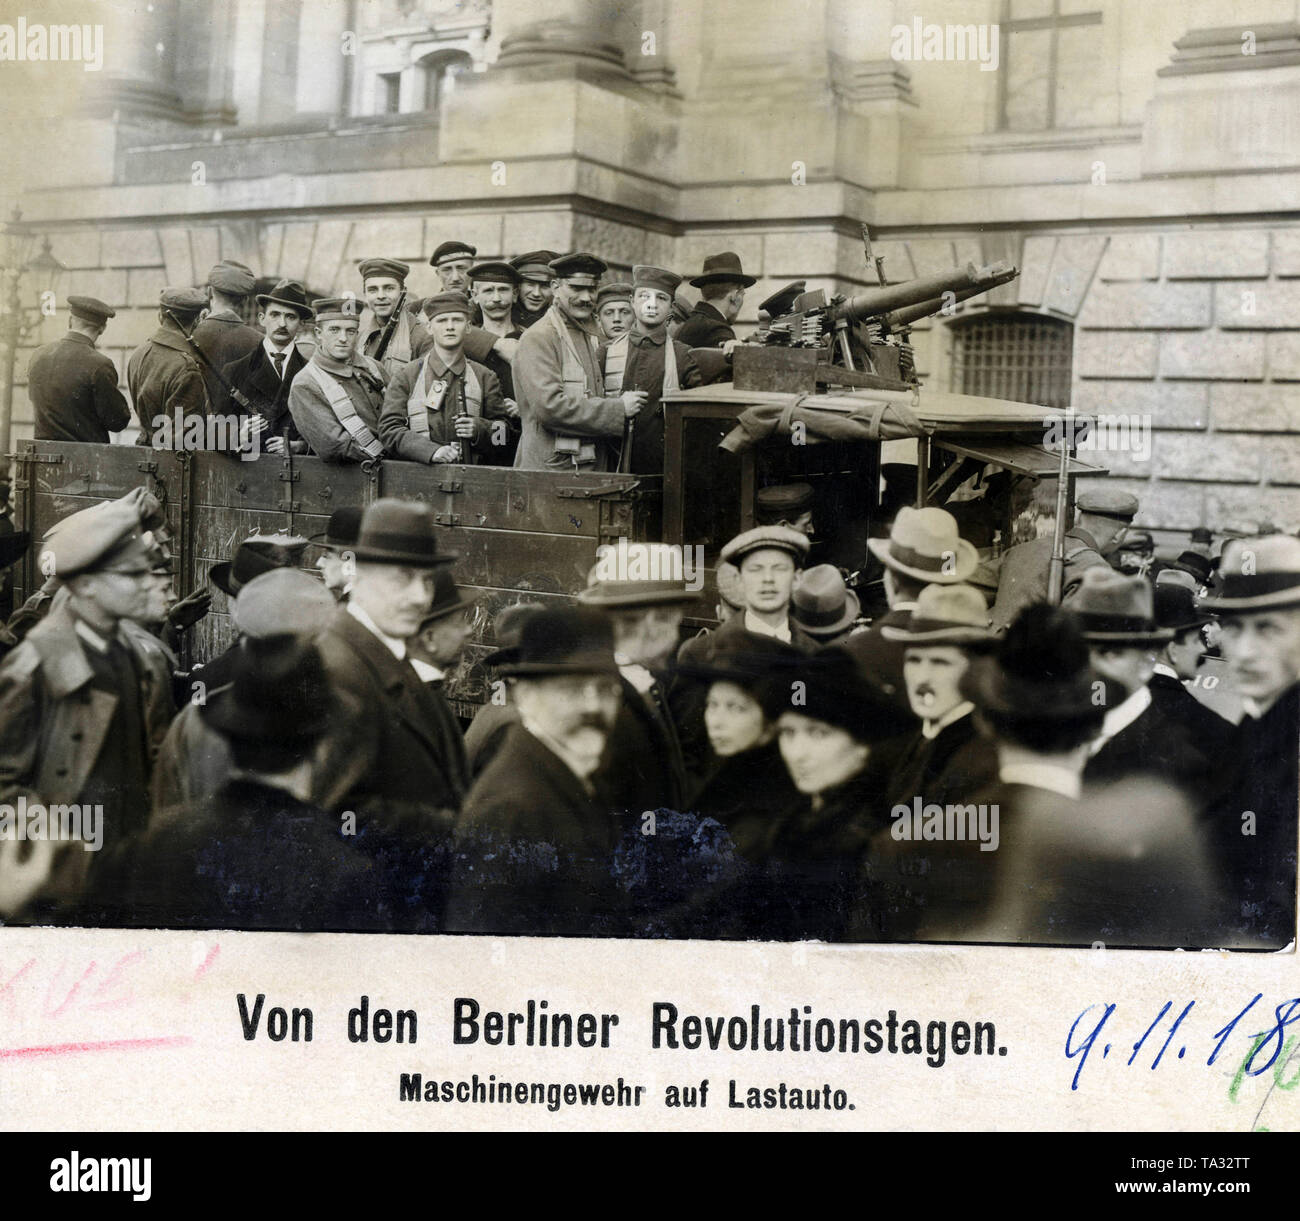 Bewaffnete revolutionäre Stehen auf einem komnick Lkw vor dem Berliner Schloss, dass von der Volksmarine Division besetzt wurde, der Arbeiter und Matrosen bewaffnet sind, unter anderem mit einem Maschinengewehr 08/15. Stockfoto